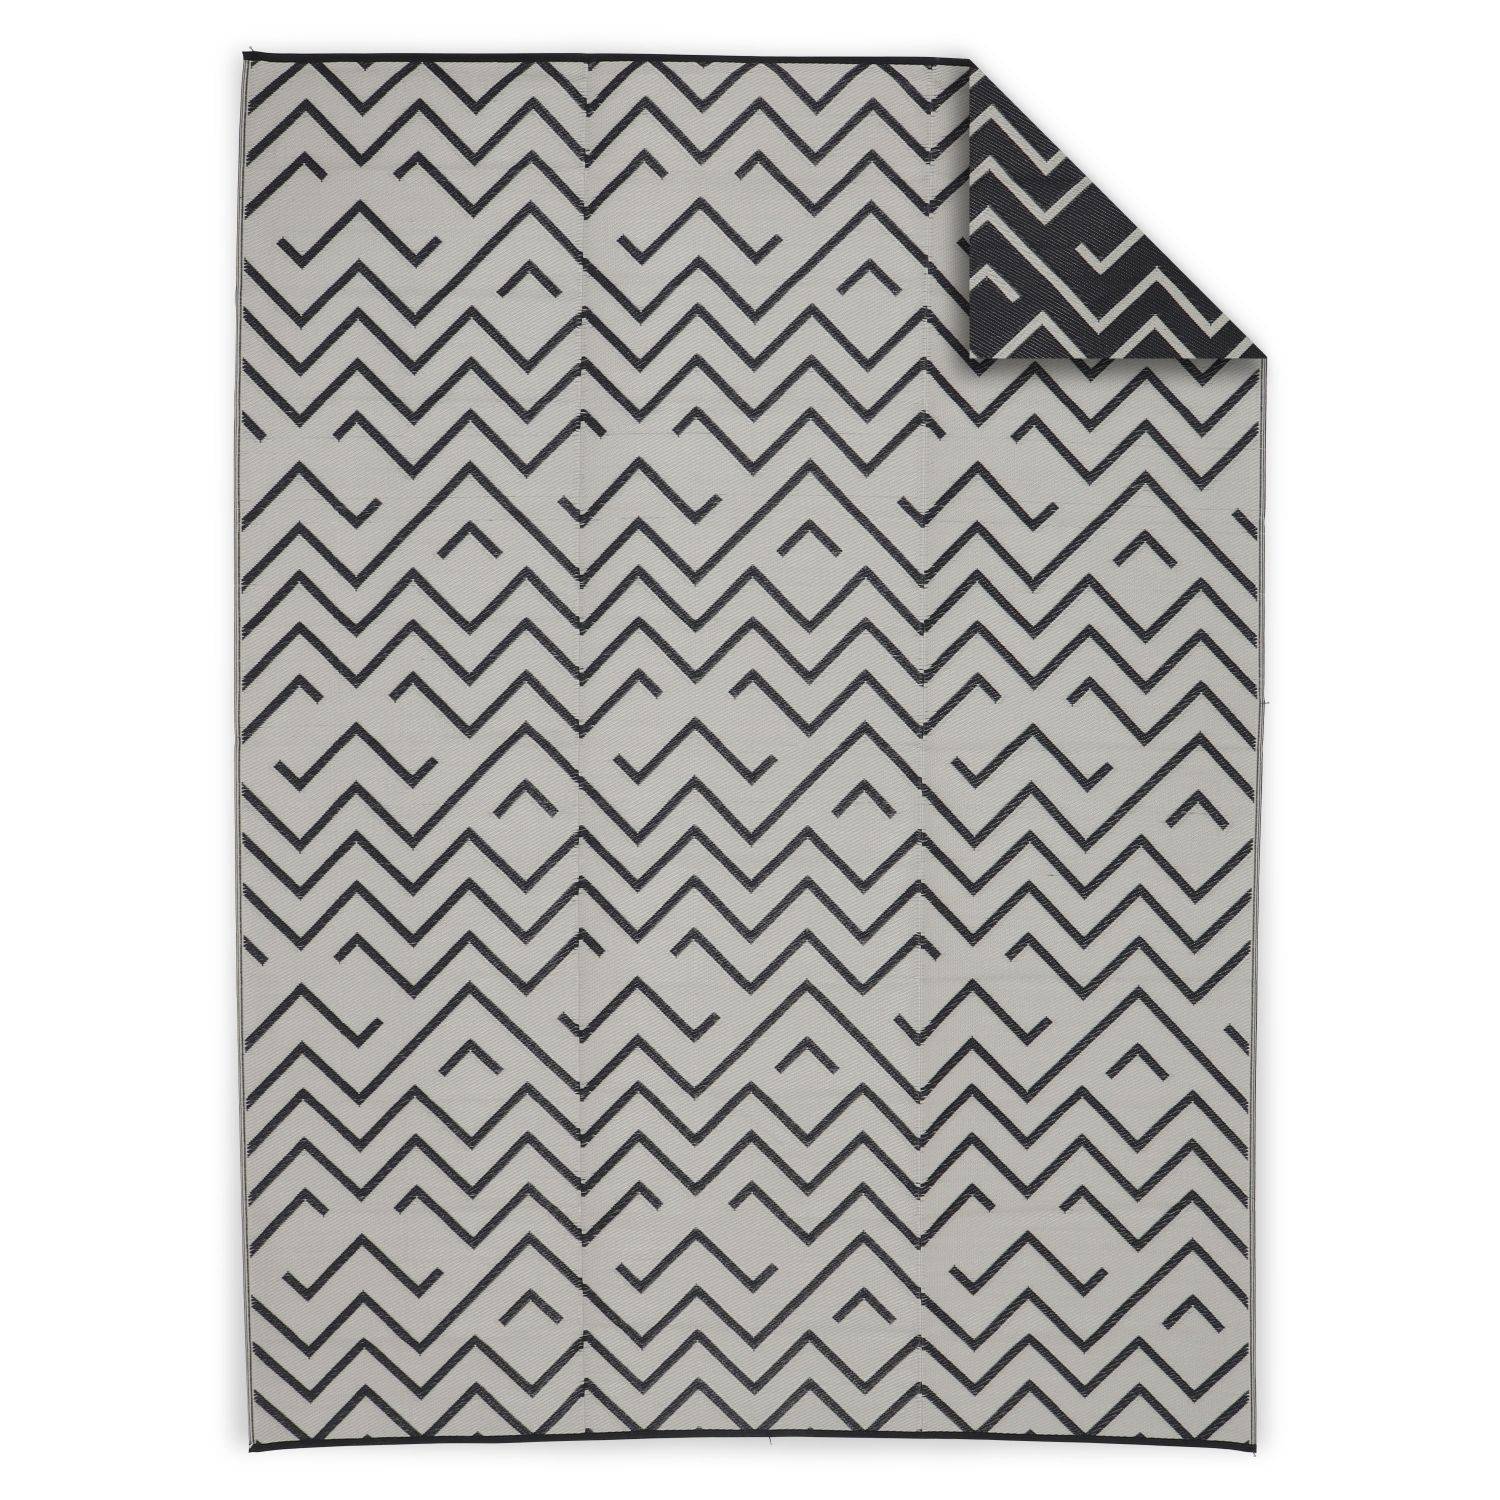 Tapis d’extérieur 270x360cm Sydney - Rectangulaire, motif vagues noir / beige, jacquard, réversible, indoor / outdoor Photo1